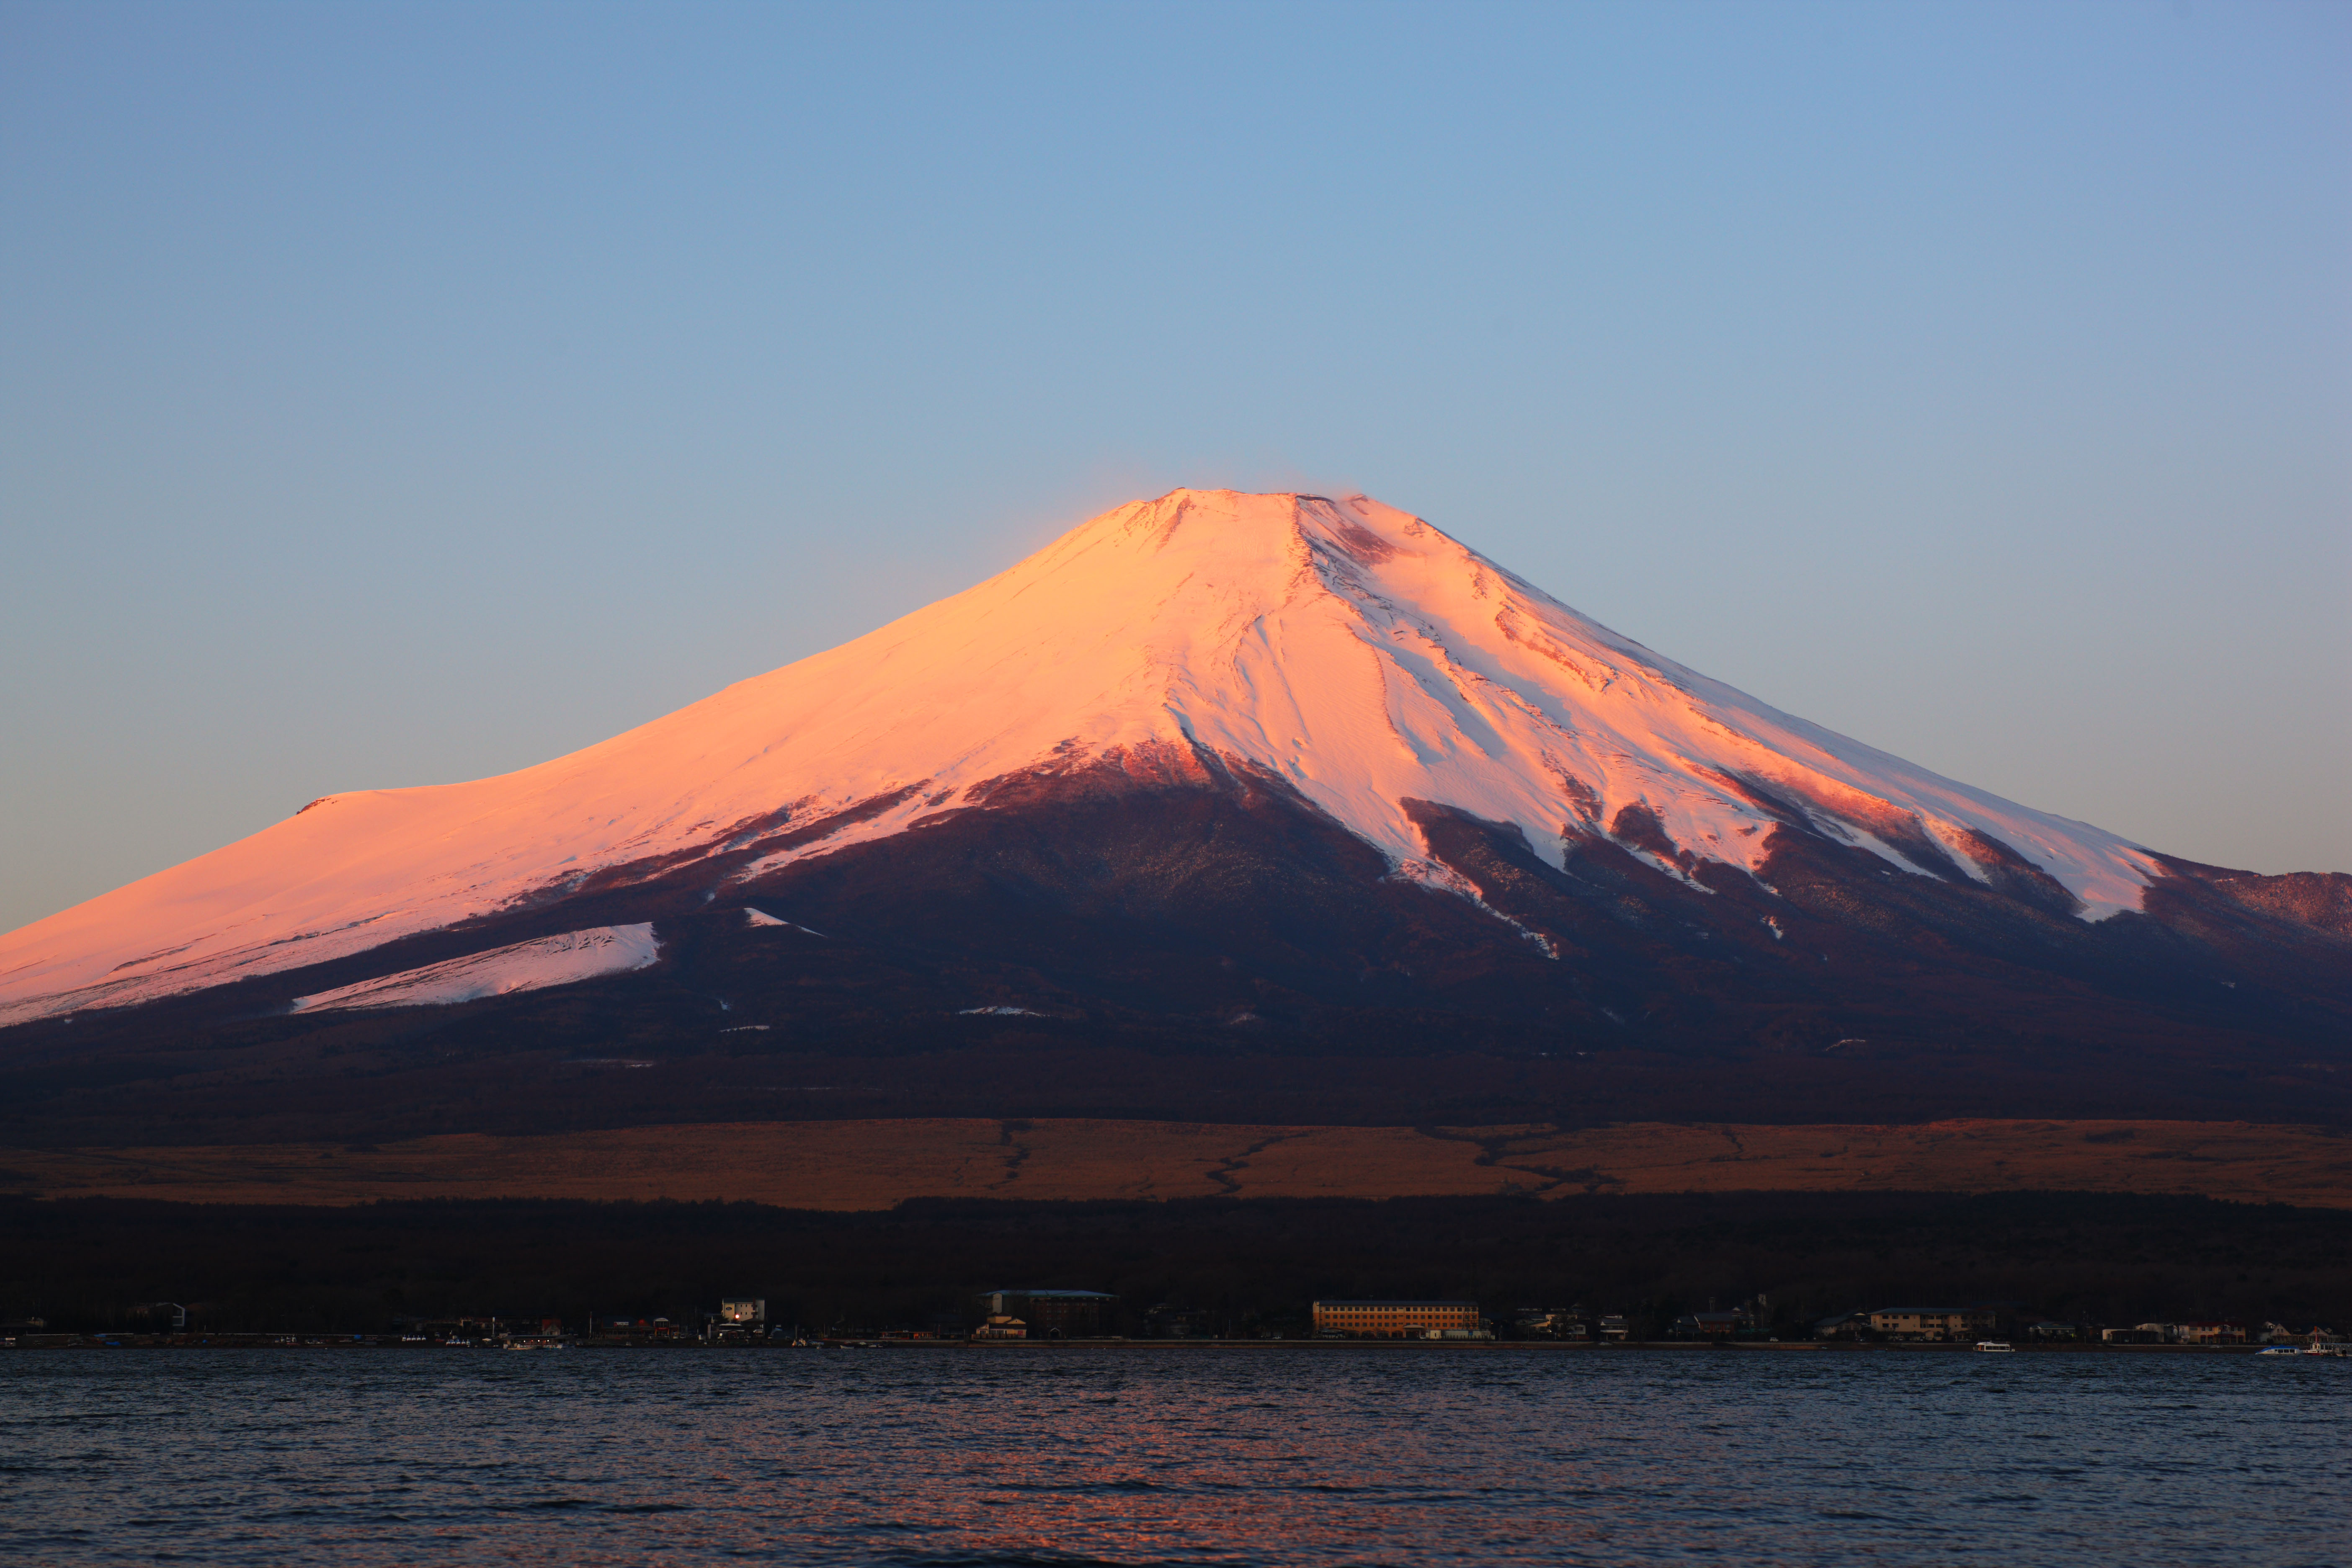 fotografia, material, livra, ajardine, imagine, proveja fotografia,Fuji vermelho, Fujiyama, As montanhas nevadas, superfcie de um lago, O brilho matutino